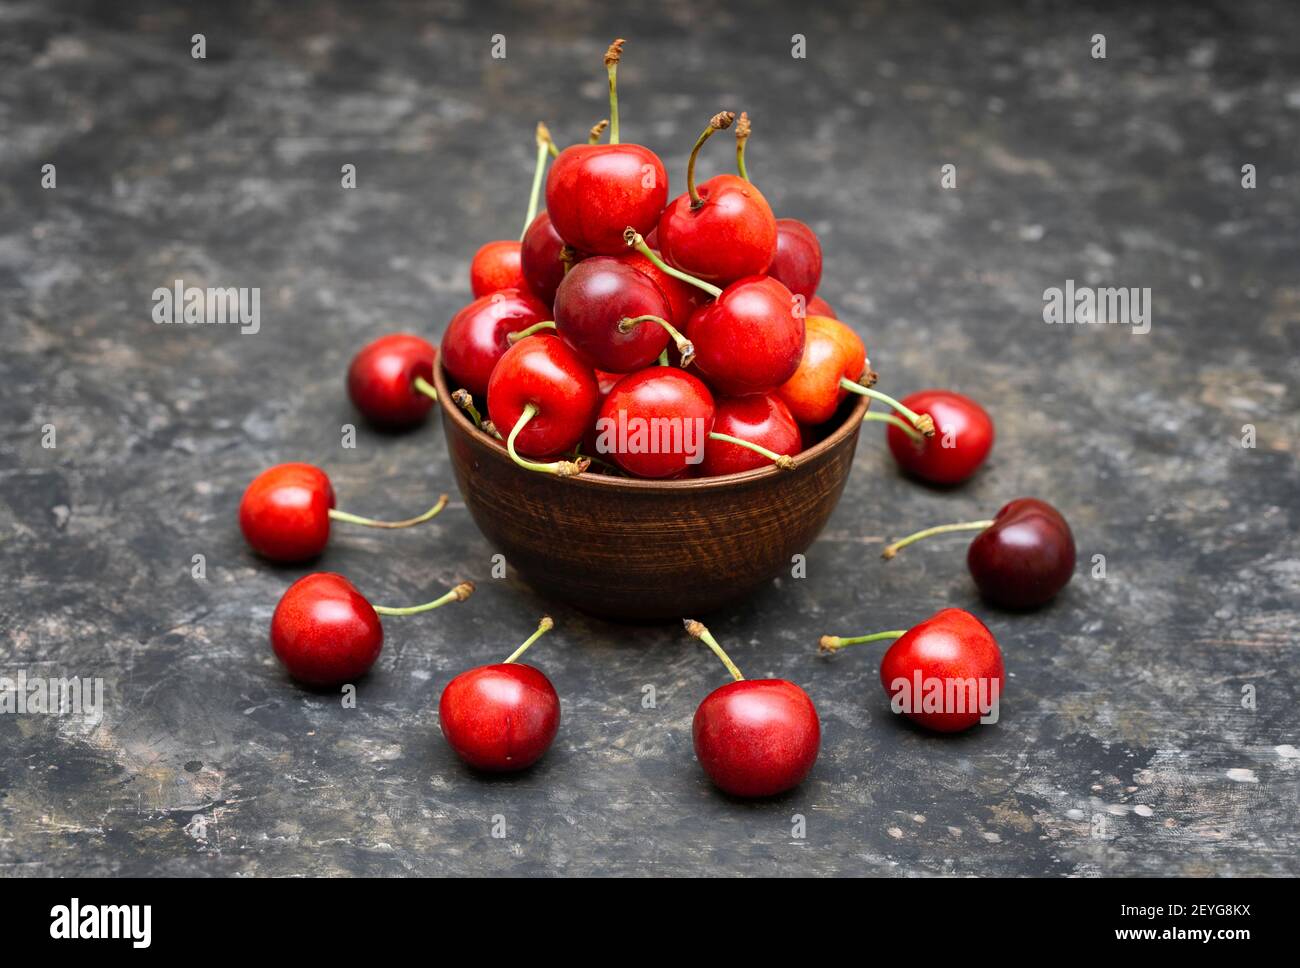 Holzschale voller Kirschen. Einige reife Früchte liegen um die Schüssel auf dem grungigen Tisch herum. Stockfoto